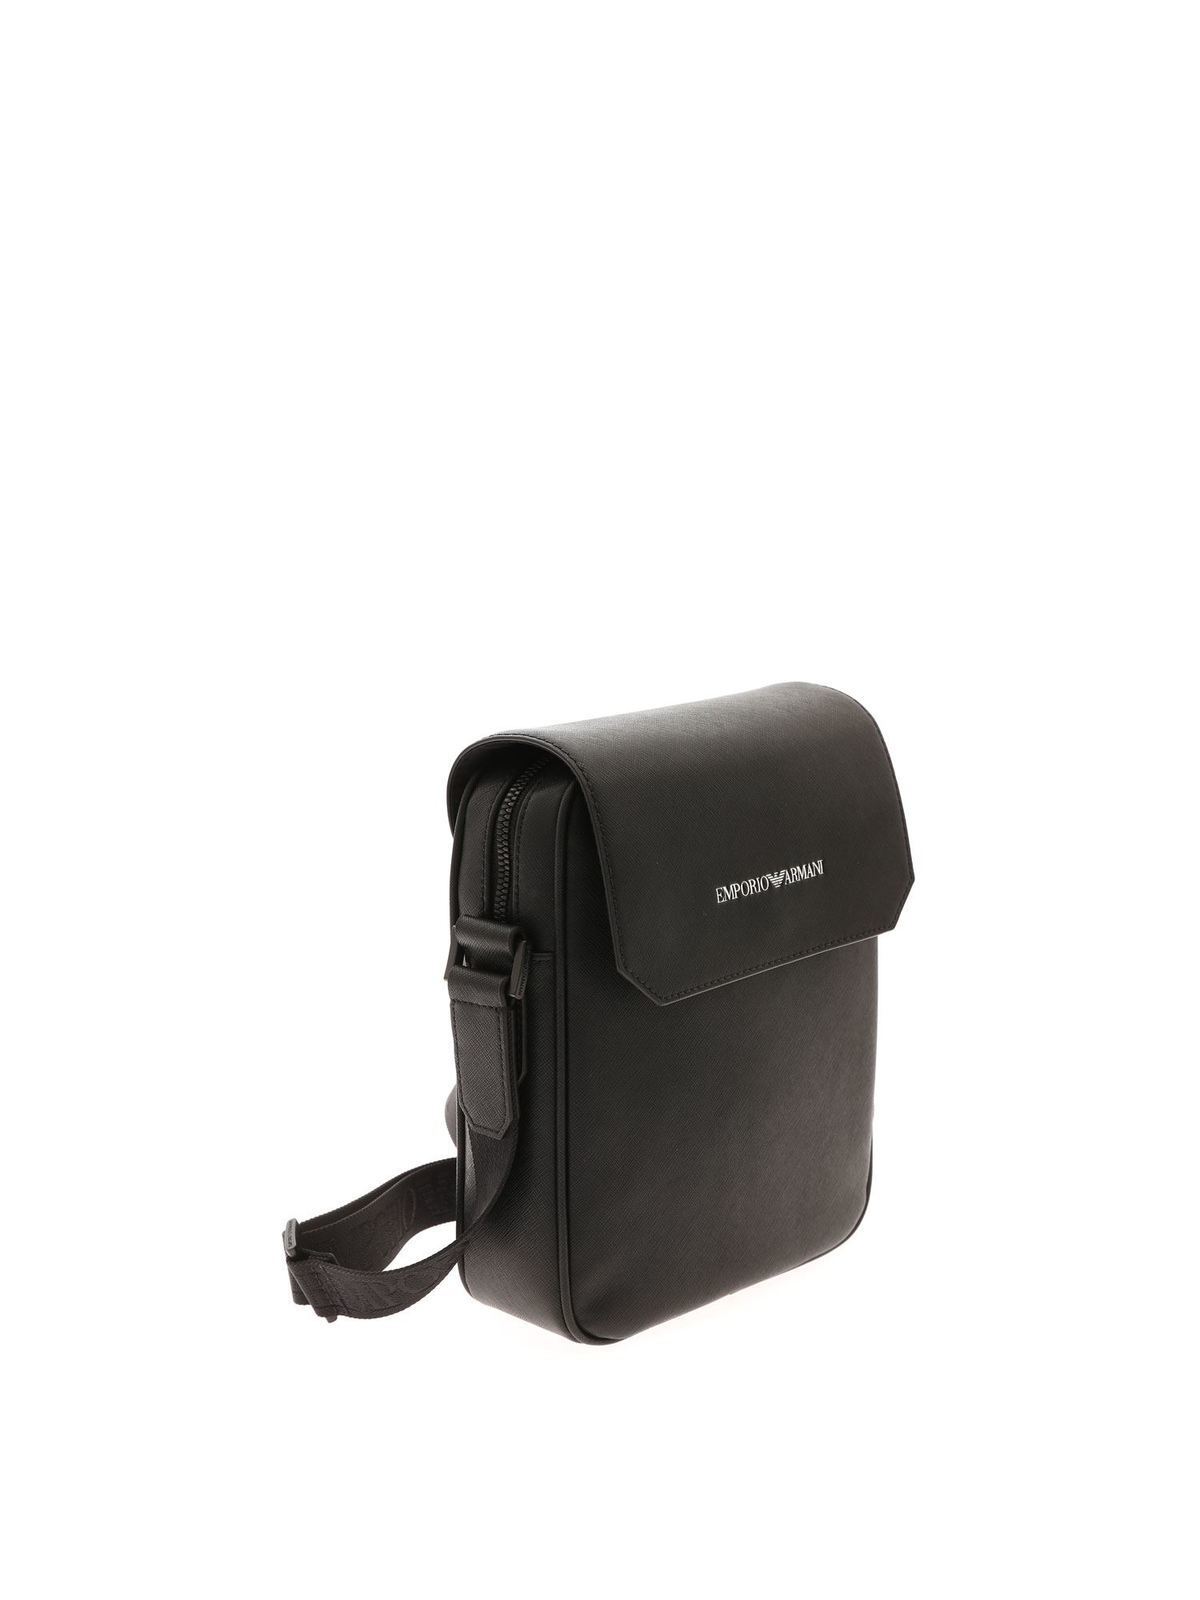 Giorgio Armani, Bags, Giorgio Armani Messenger Bag Leather